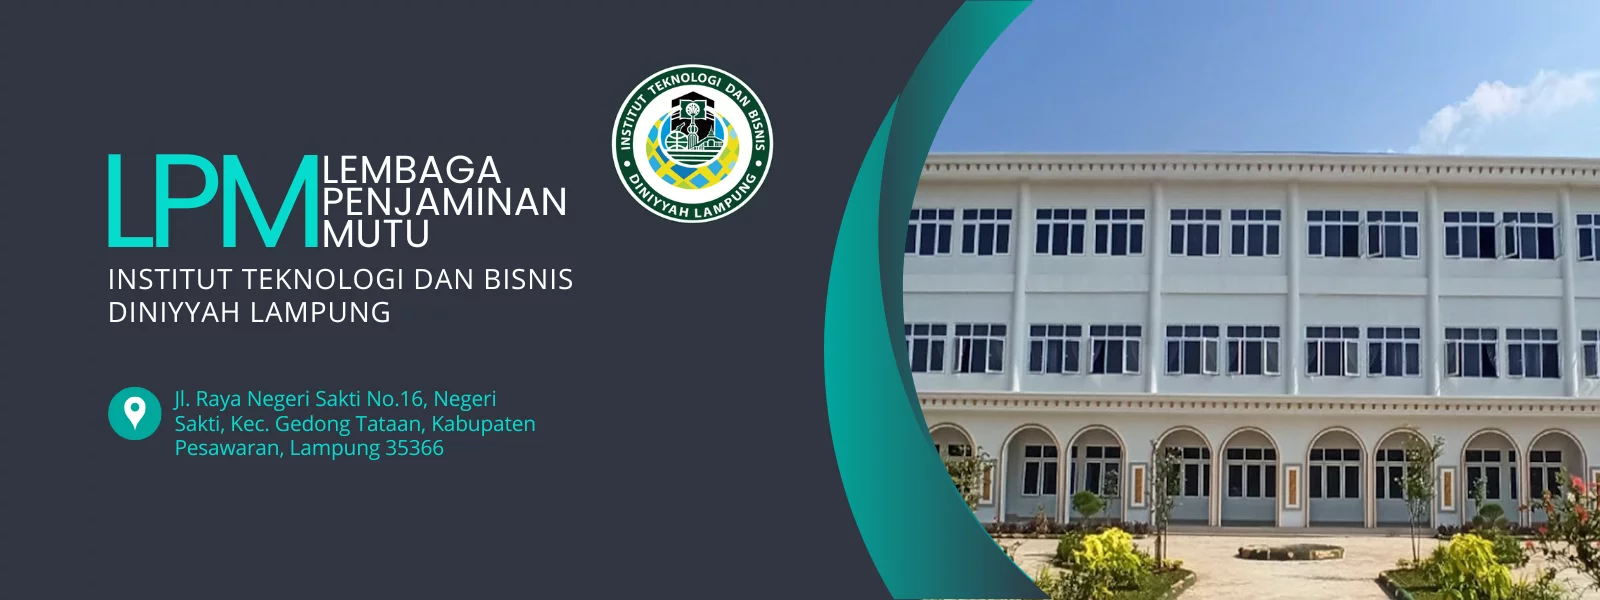 Simulasi Persiapan Akreditasi Program Studi Kewirausahaan Institut Teknologi dan Bisnis Diniyyah Lampung